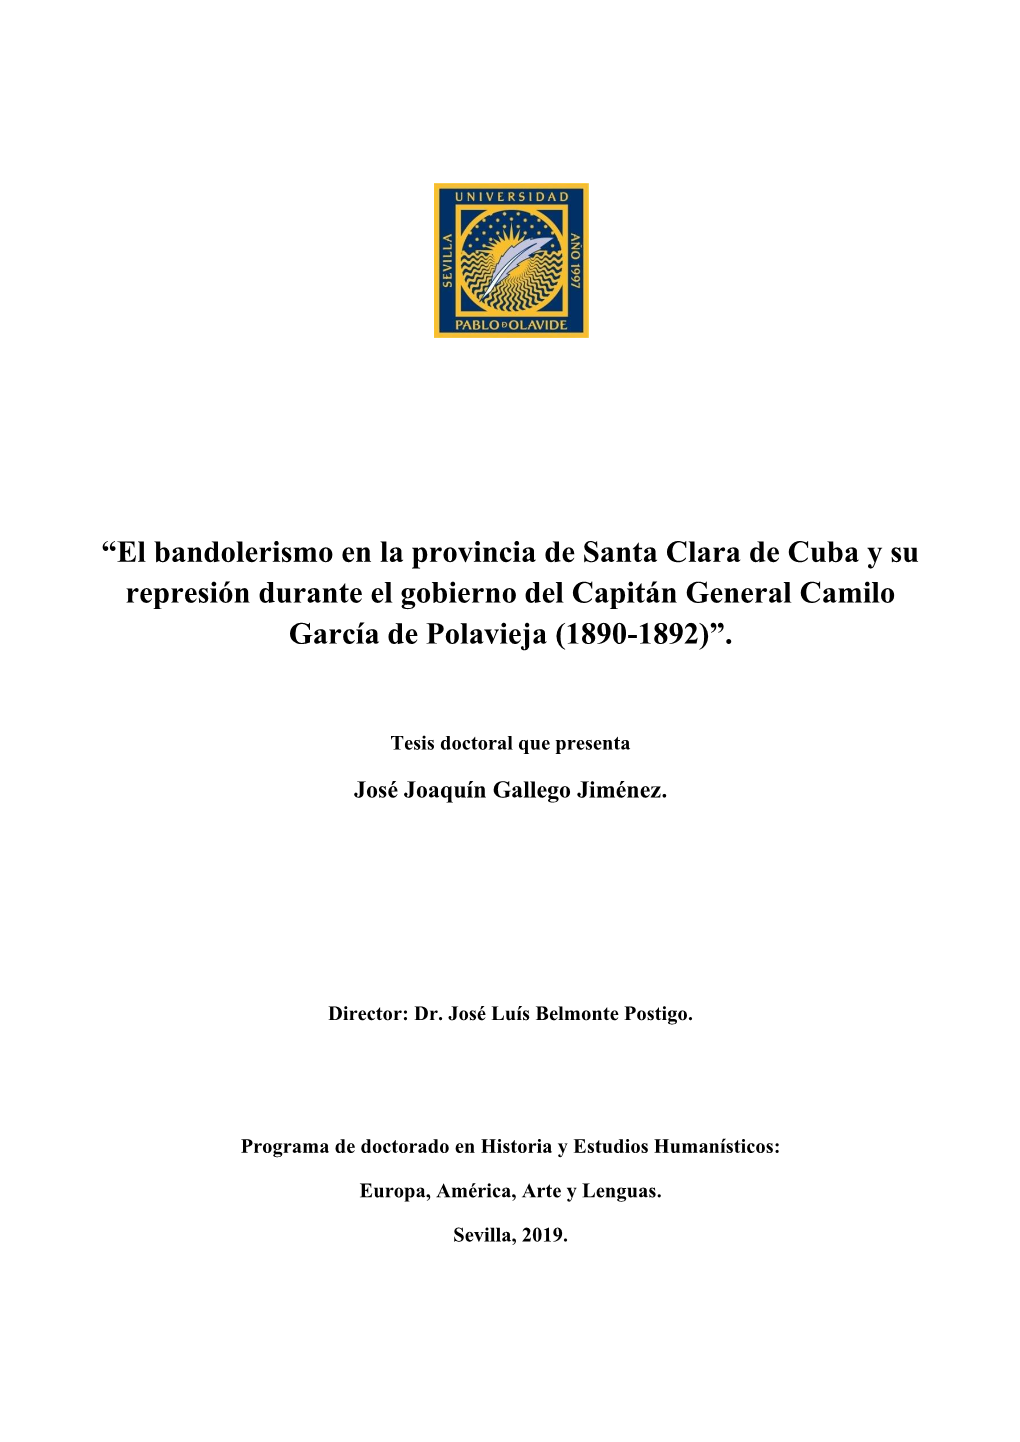 “El Bandolerismo En La Provincia De Santa Clara De Cuba Y Su Represión Durante El Gobierno Del Capitán General Camilo García De Polavieja (1890-1892)”